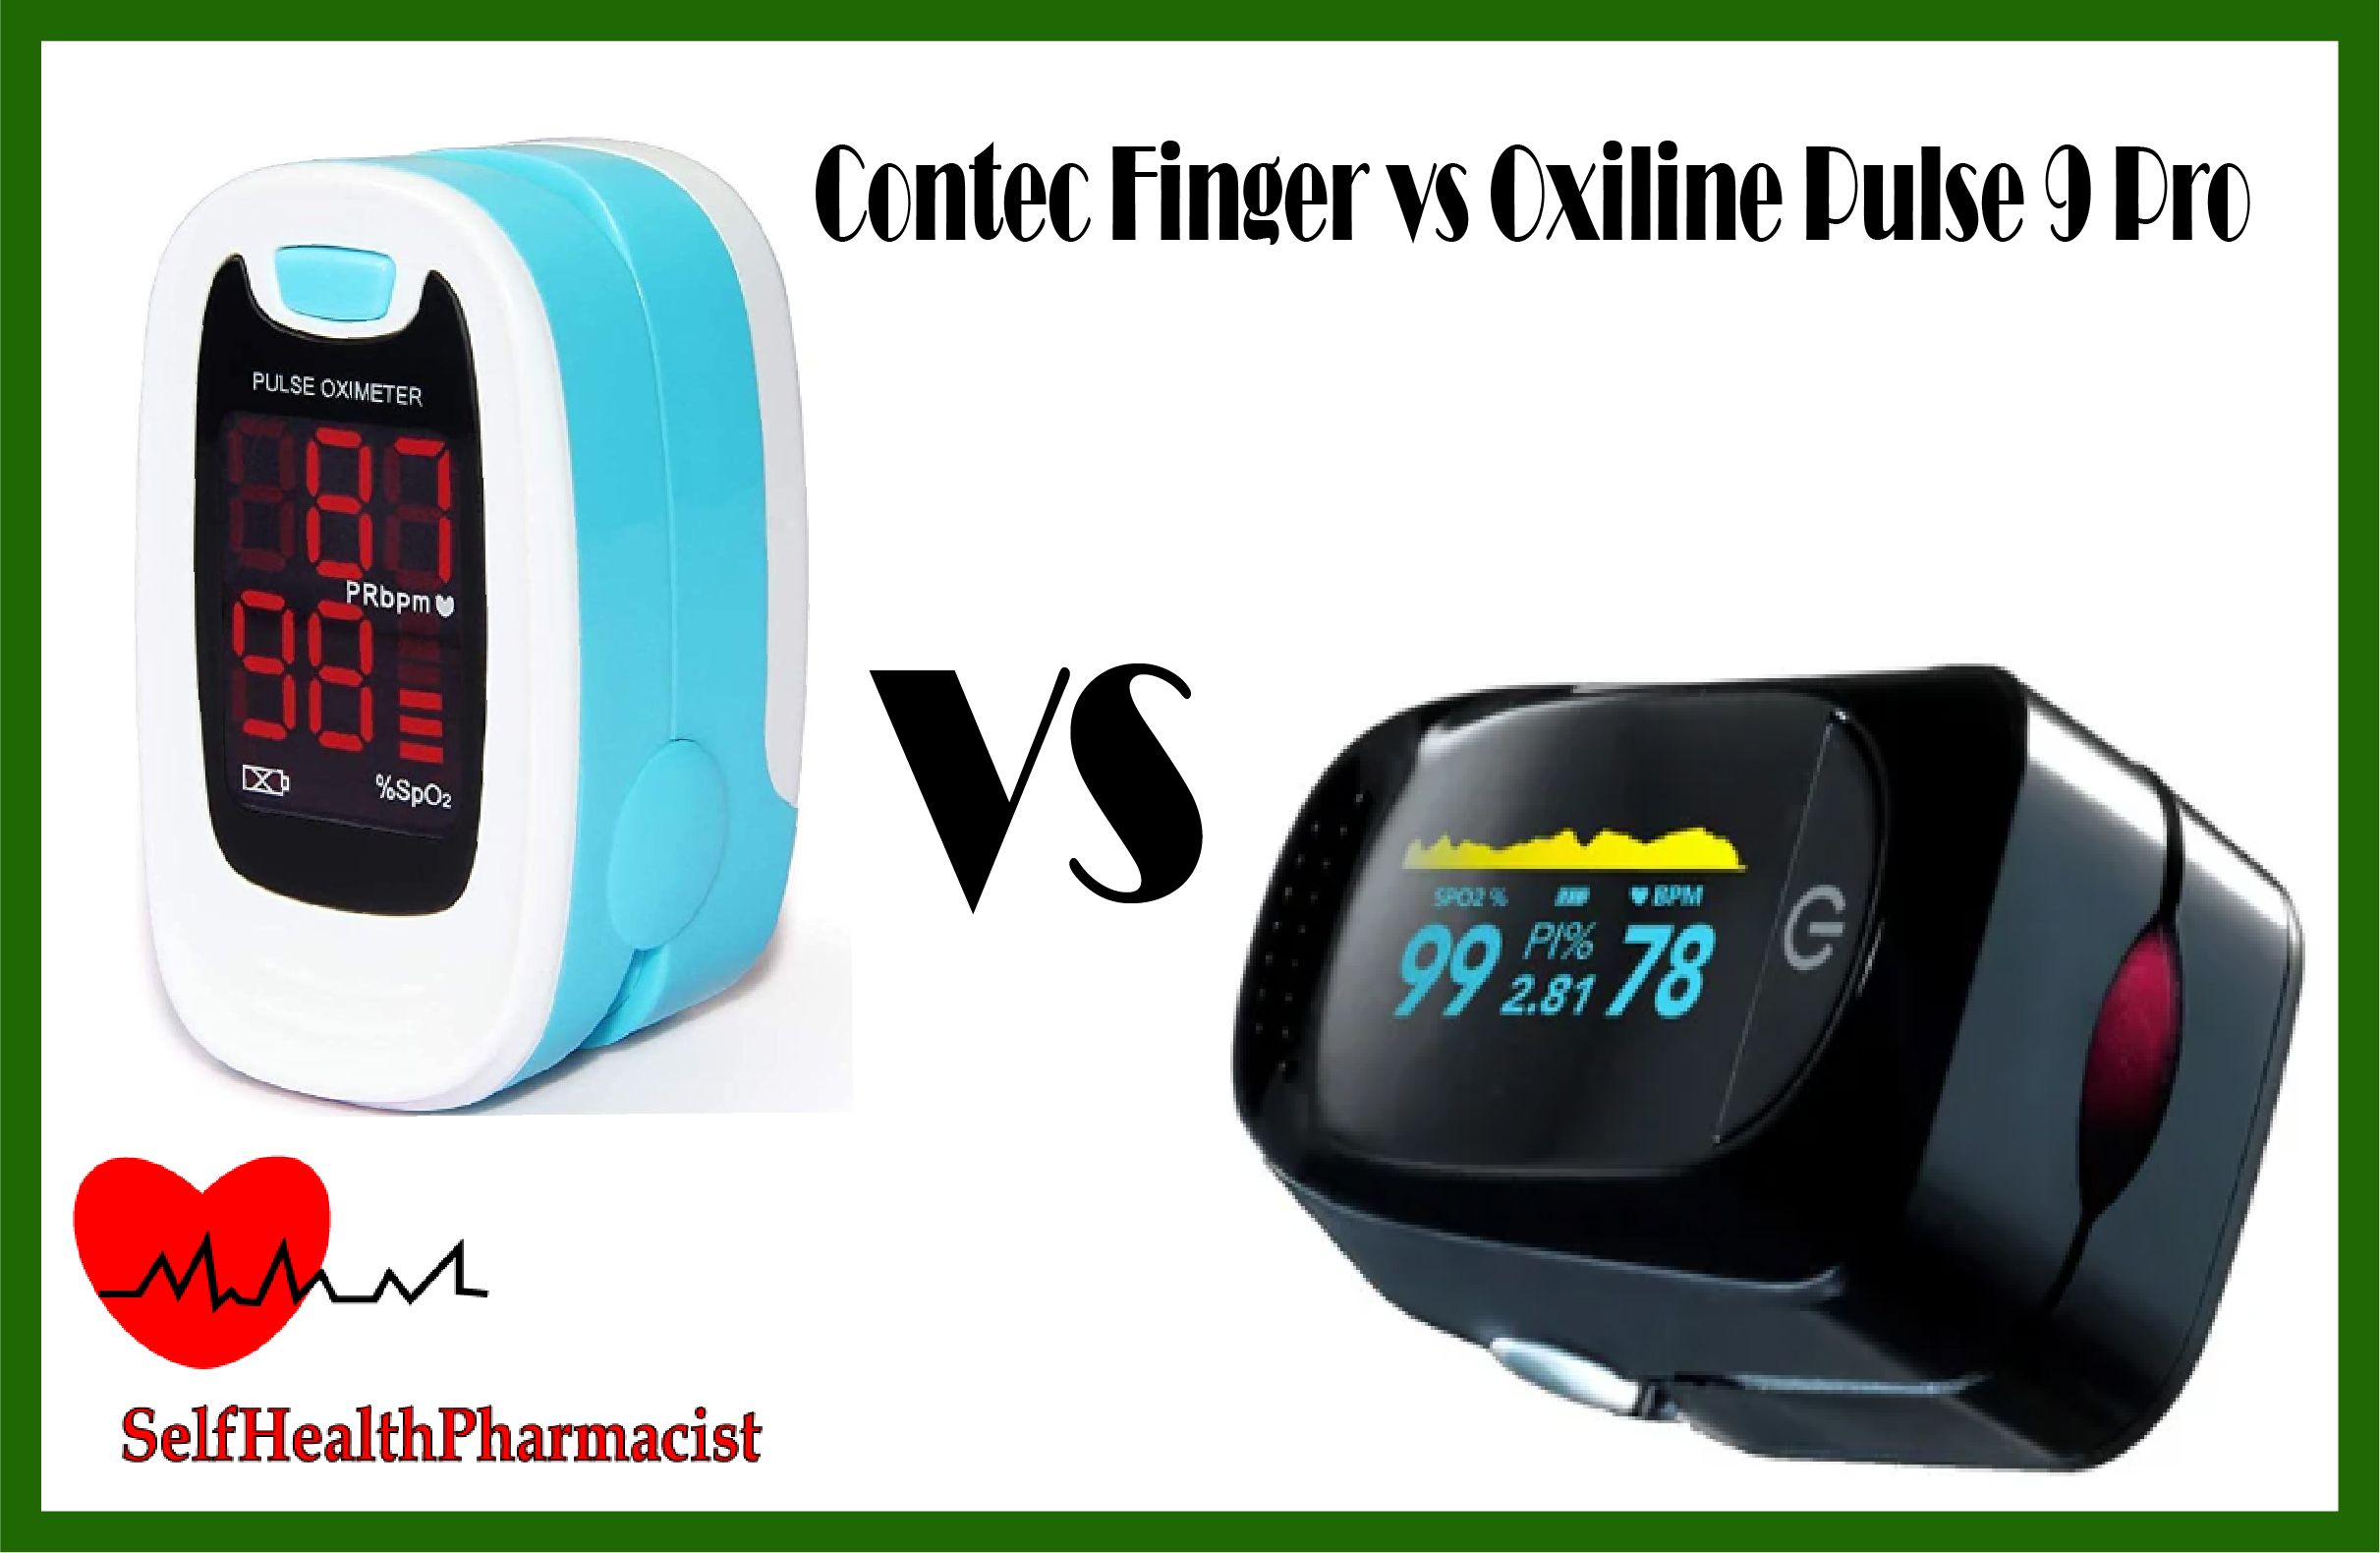 Contec Finger vs Oxiline Pulse 9 Pro